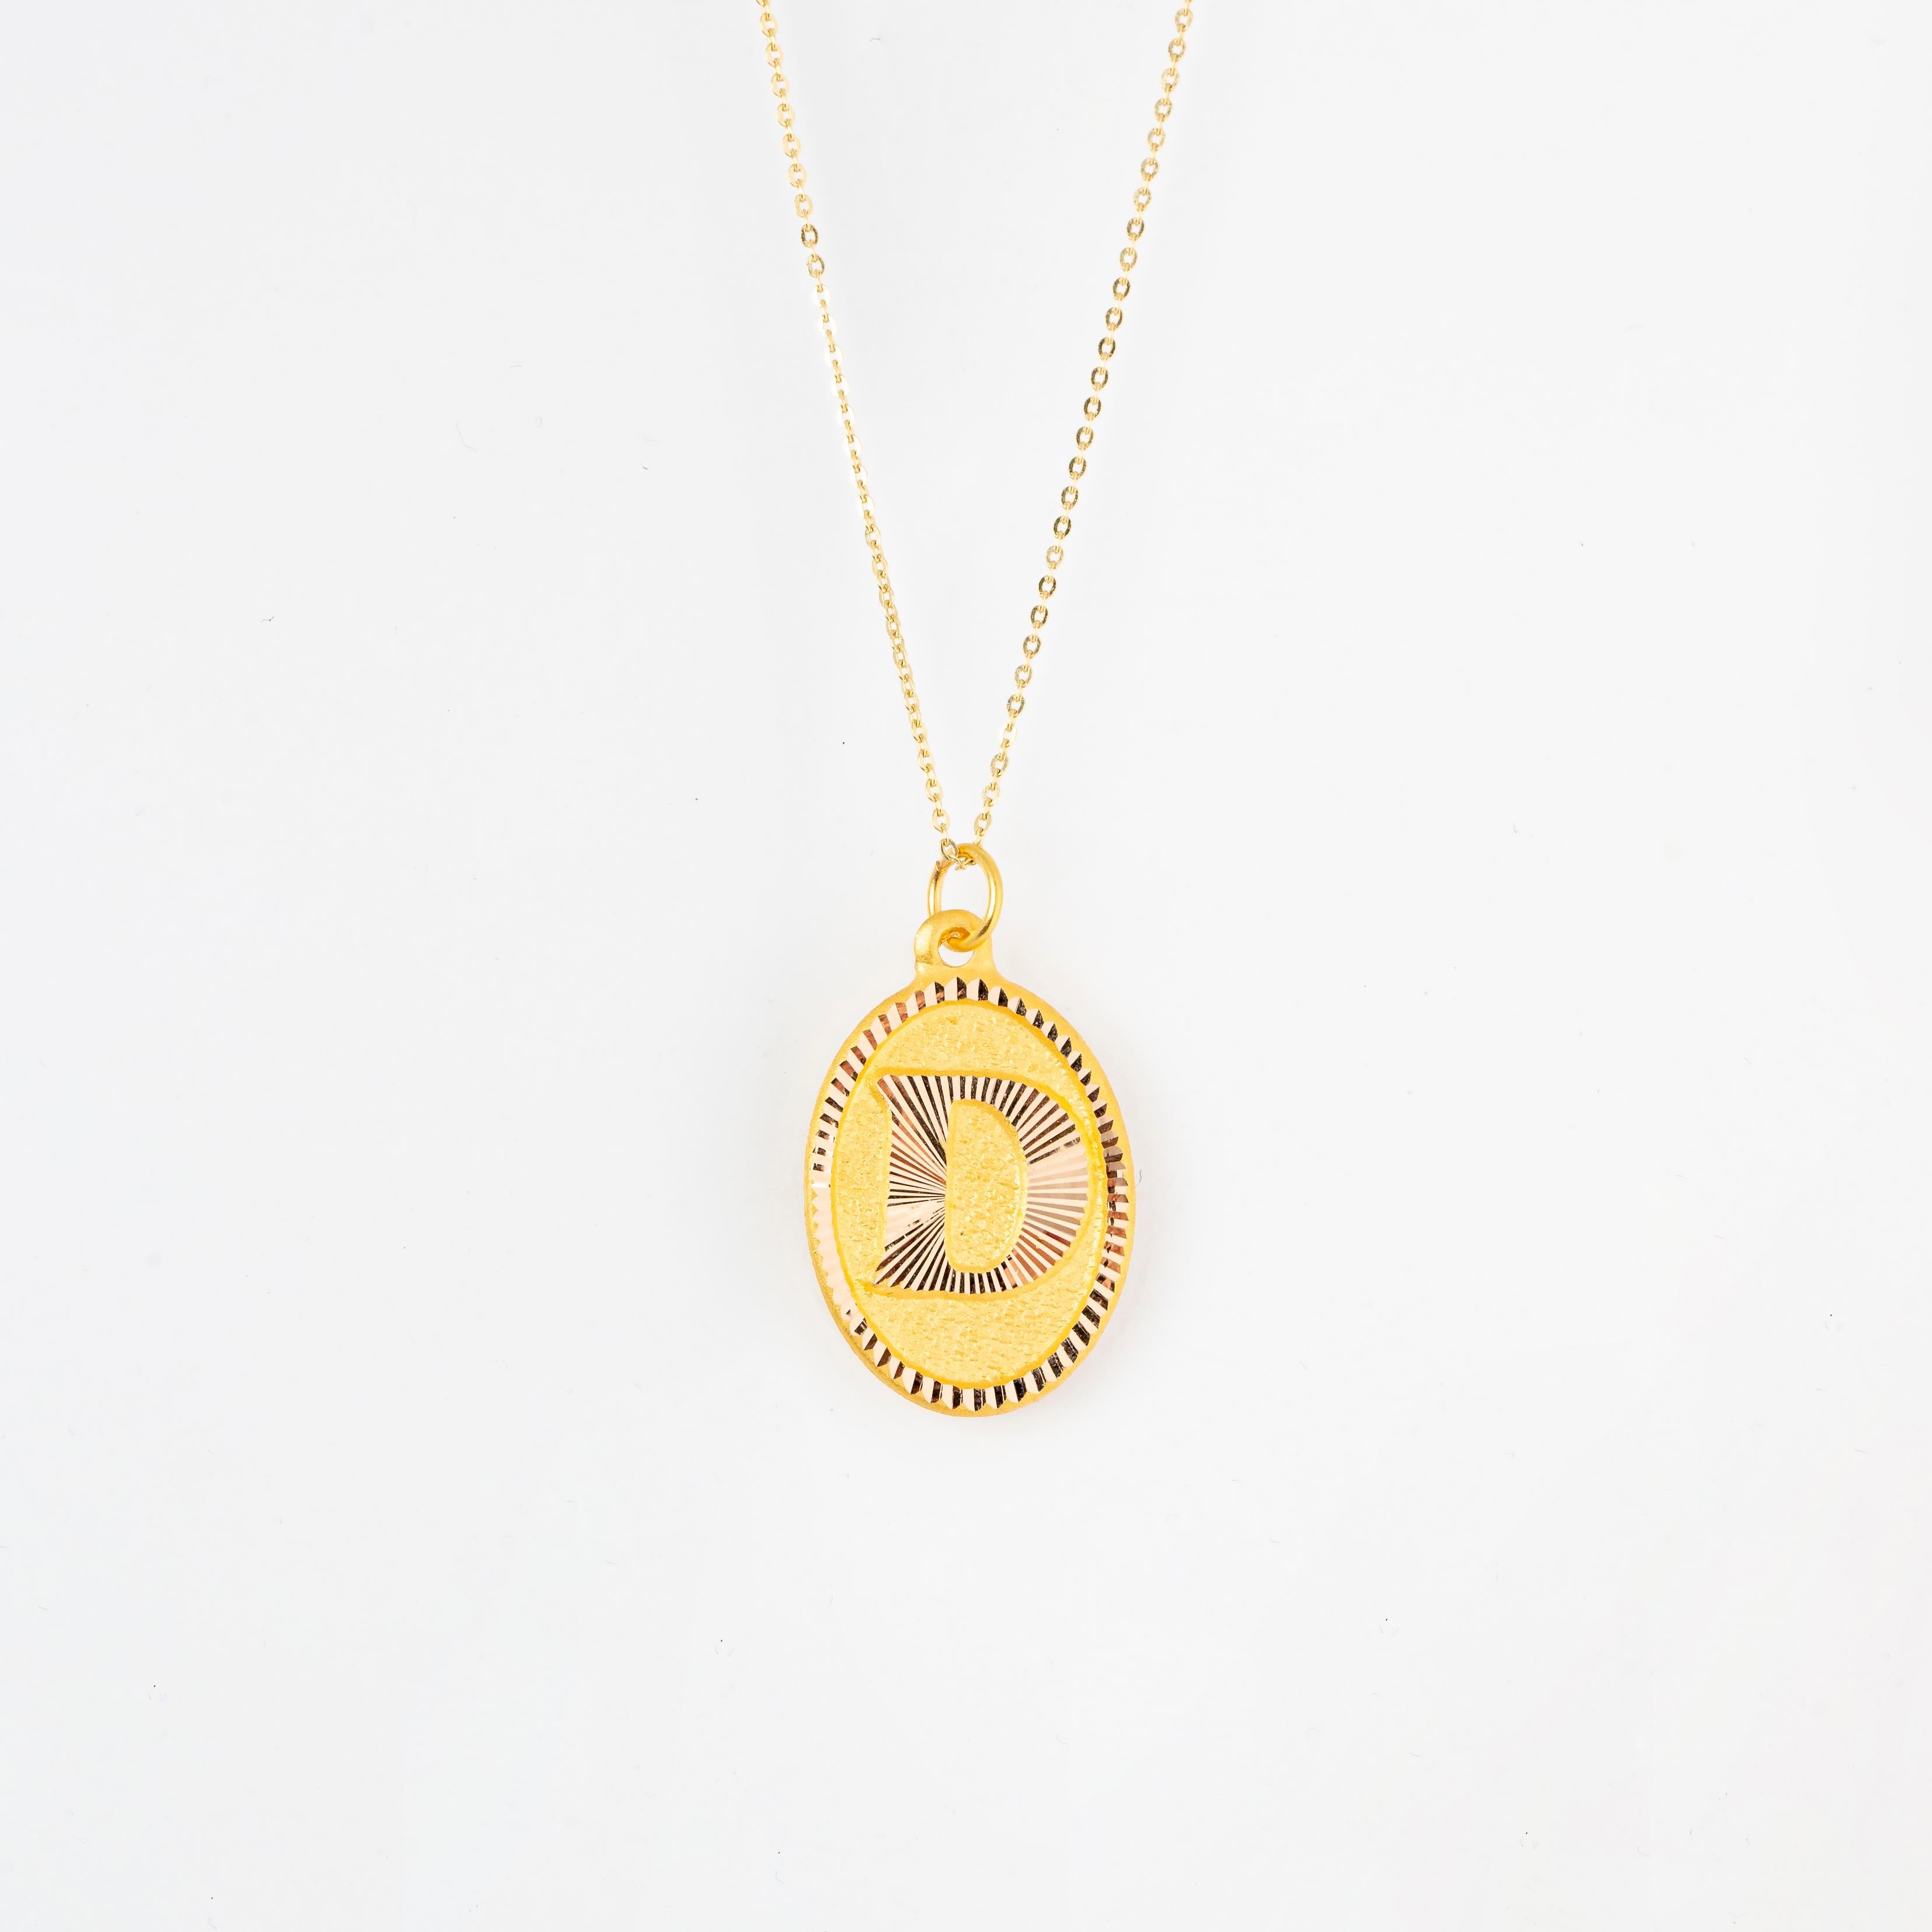 14K Gold-Halsketten, Brief-Halskette Modelle, Buchstabe D Gold-Halskette-Geschenk-Halskette Modelle, tägliche Halsketten, Brief-Schmuck

Es ist ein Produkt der Handarbeit. Handgemacht